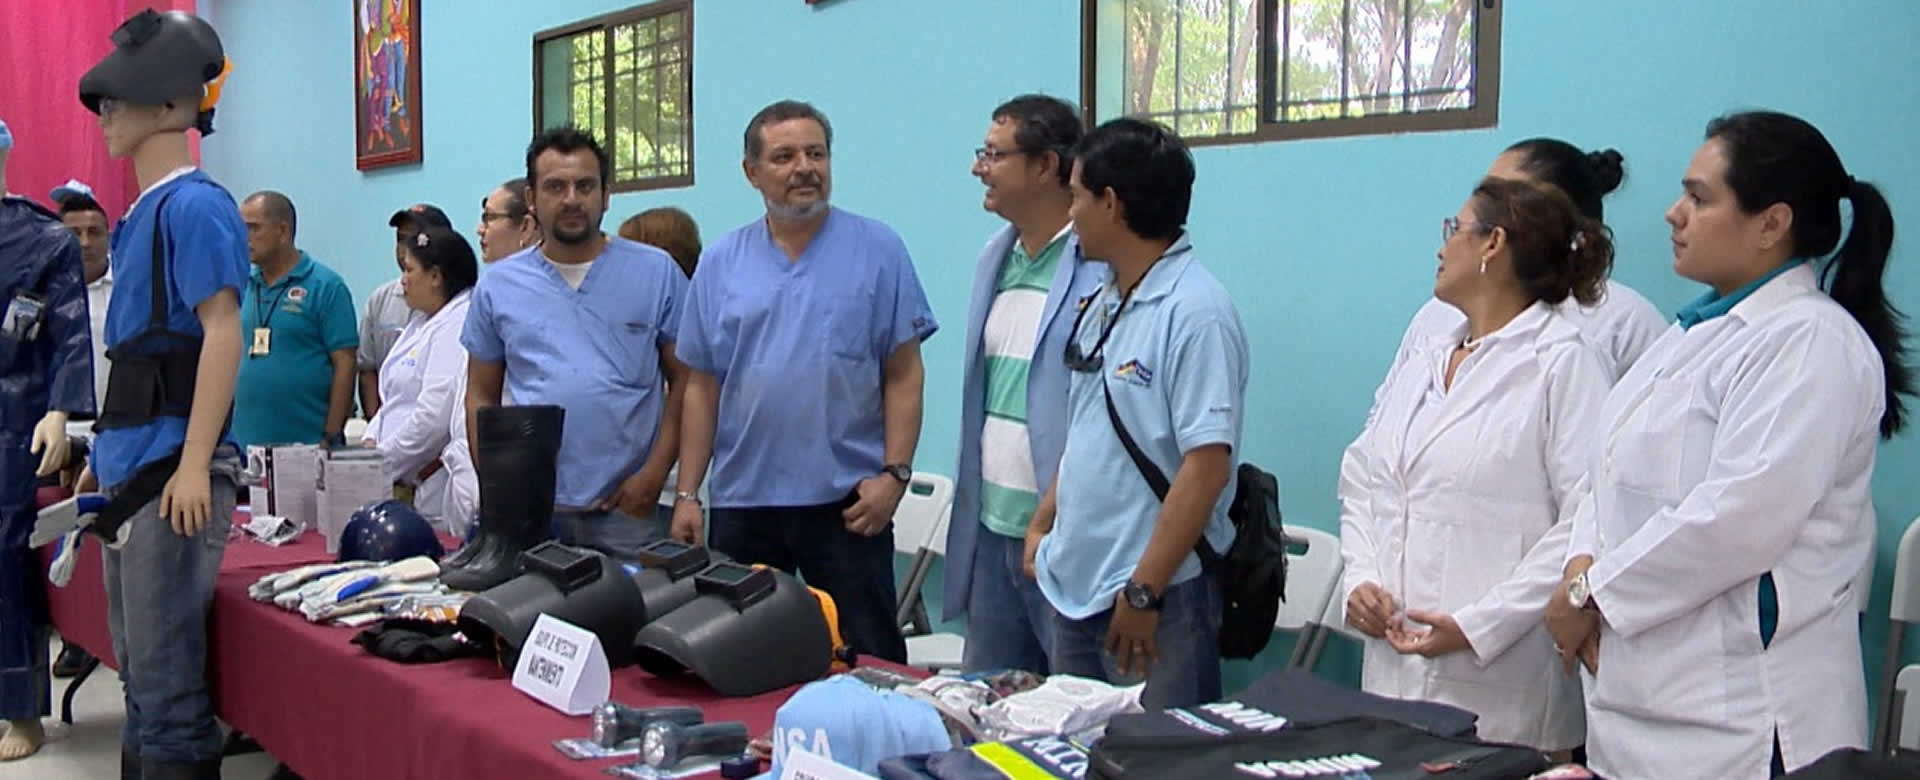 MINSA entregan recursos de seguridad a trabajadores de salud del país